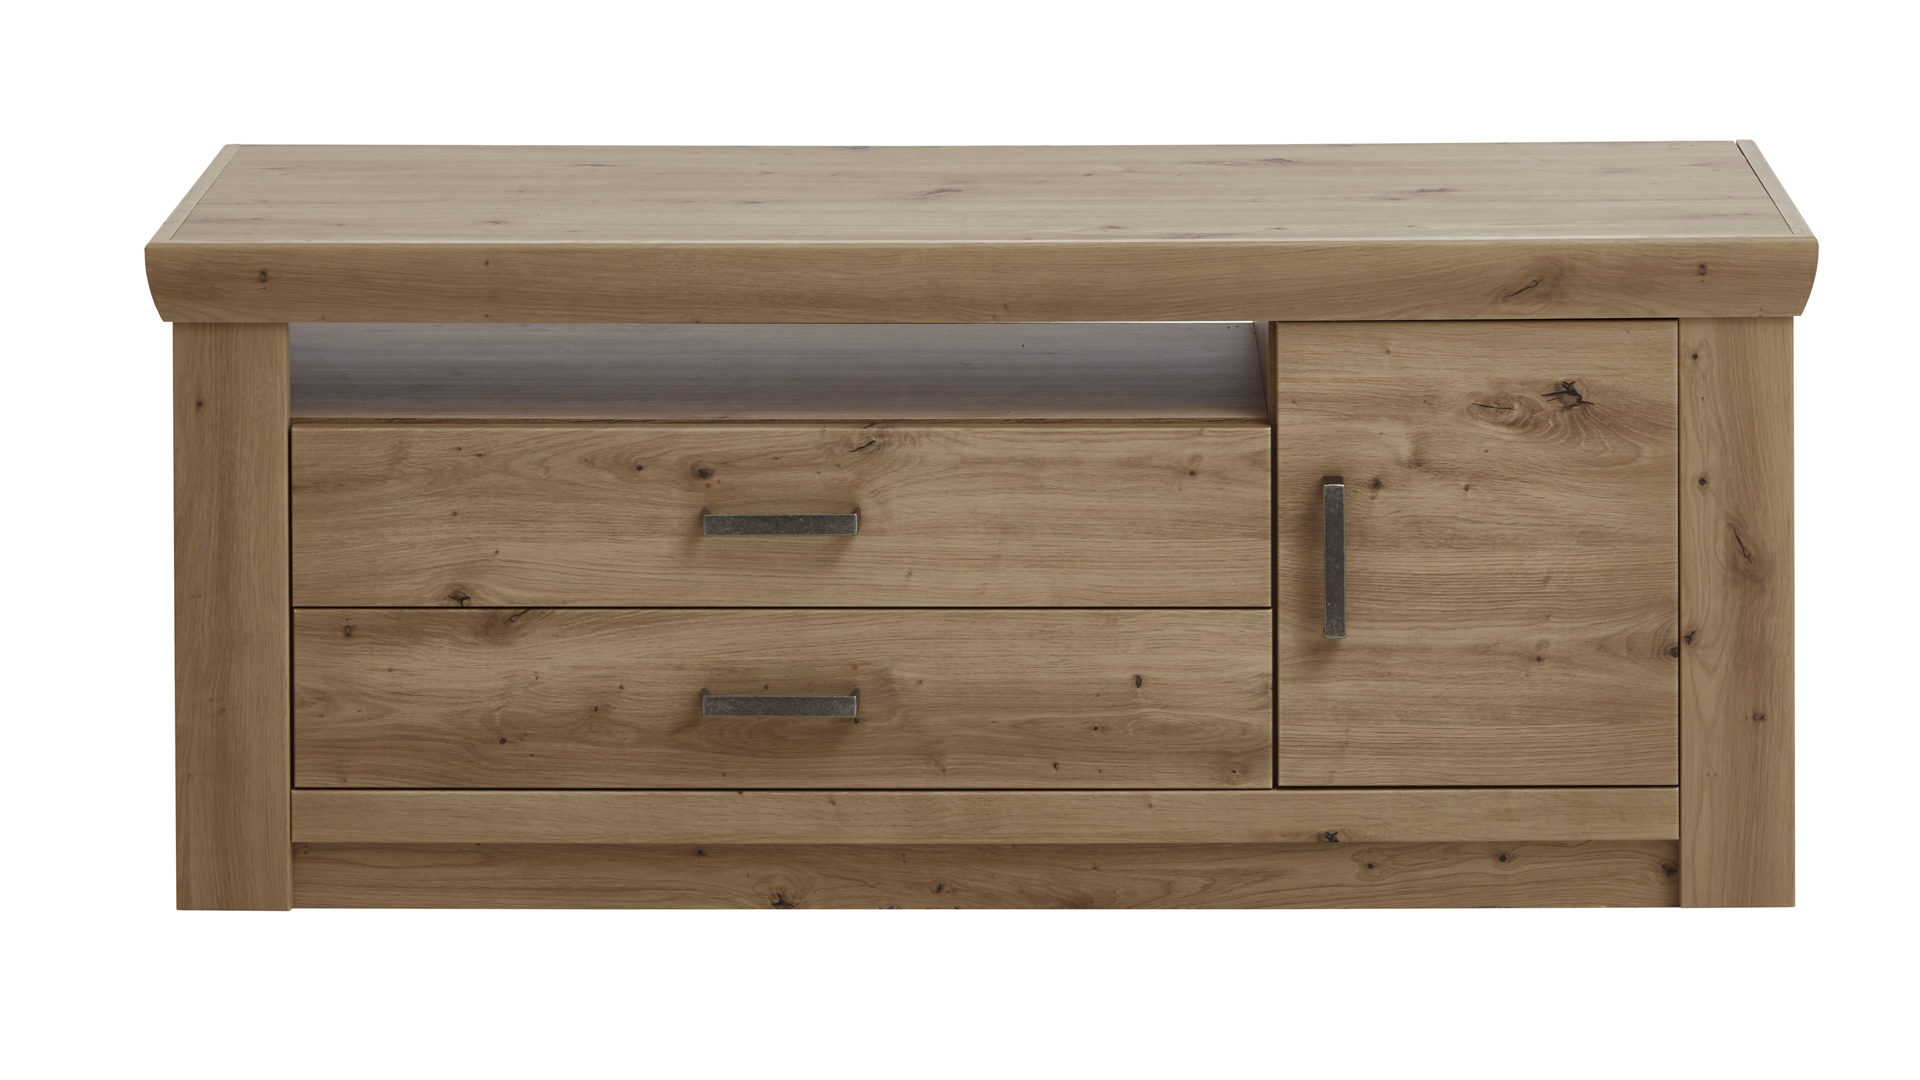 Lowboard Mca furniture aus Holz in Holzfarben TV-Lowboard balkeneichefarbene Kunststoffoberflächen – zwei Schubladen, eine Tür